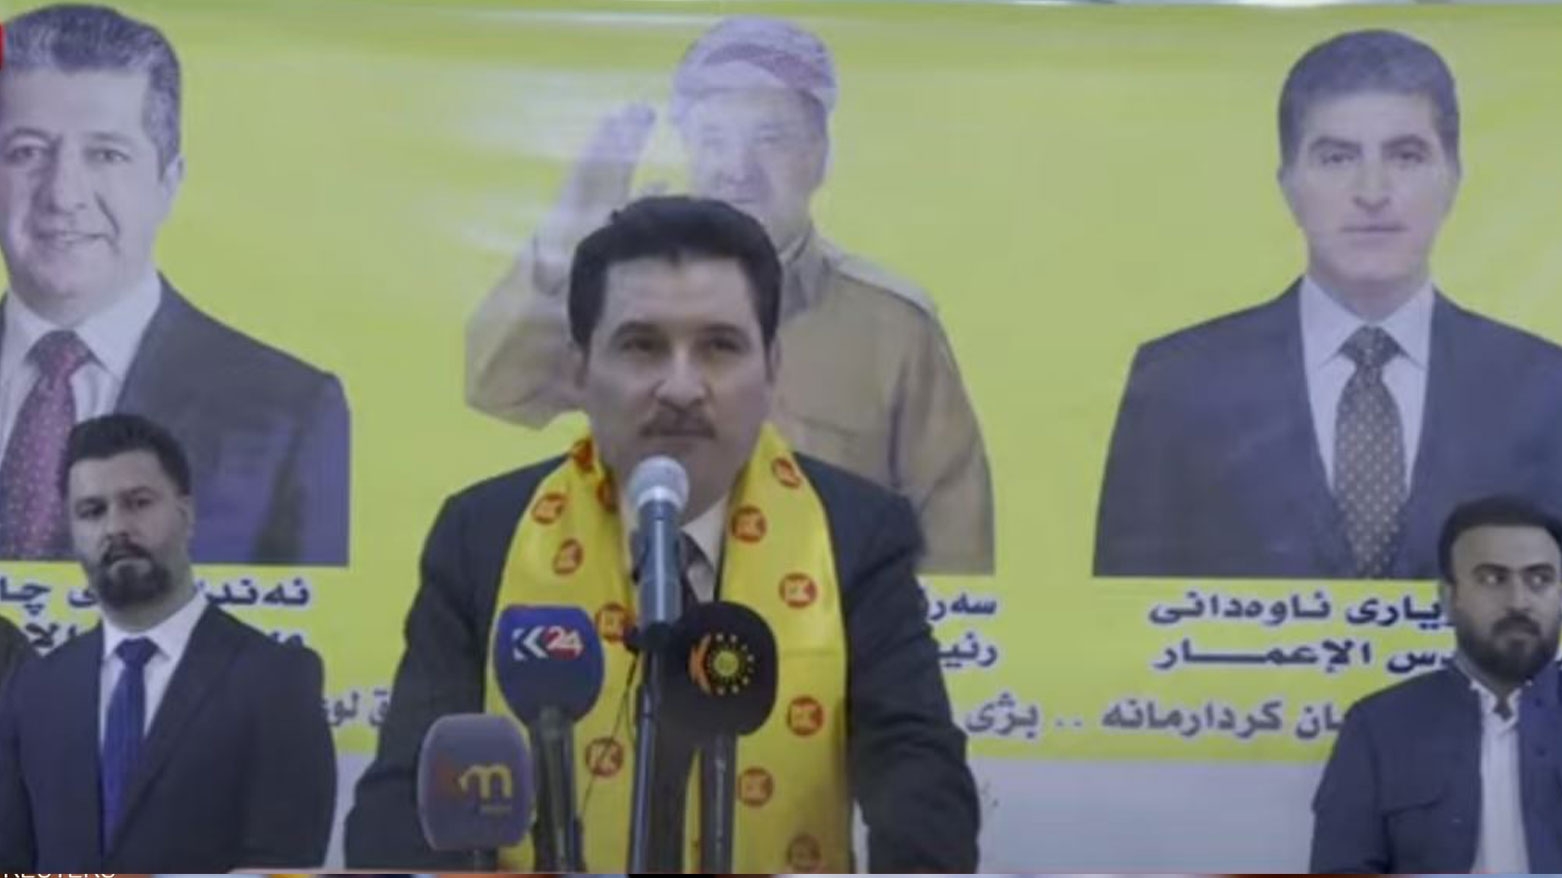 عبد الله: قوة الكورد تكمن في بقاء الحزب الديمقراطي قويّاً في المناطق الكوردستانية خارج إدارة الإقليم